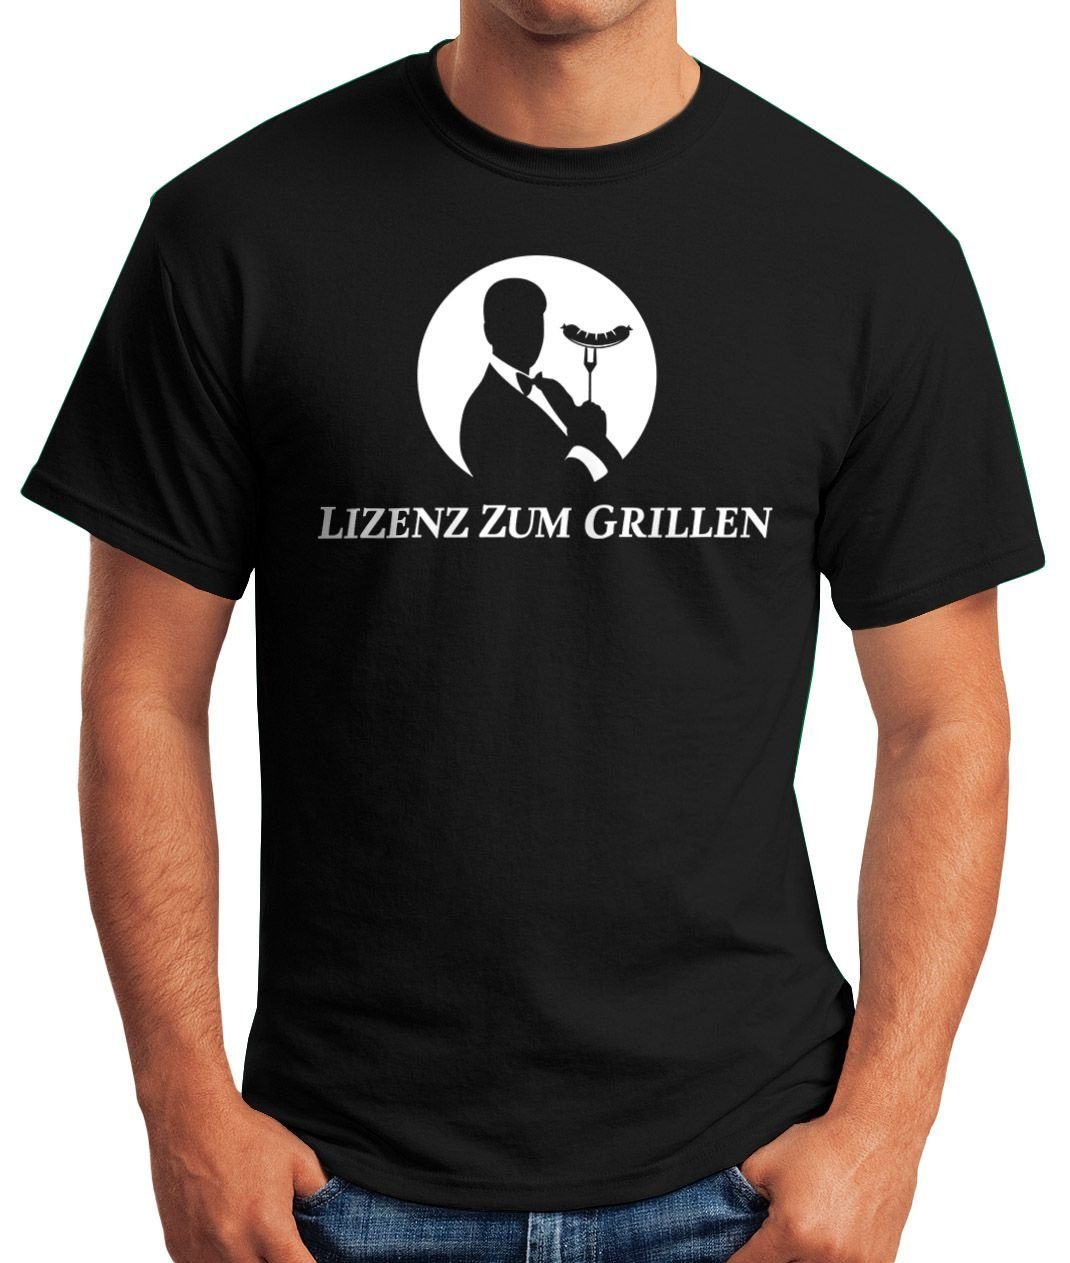 MoonWorks Print-Shirt Herren Grillen Agent zum Parodie Print Lizenz T-Shirt lustig mit Moonworks® Fun-Shirt